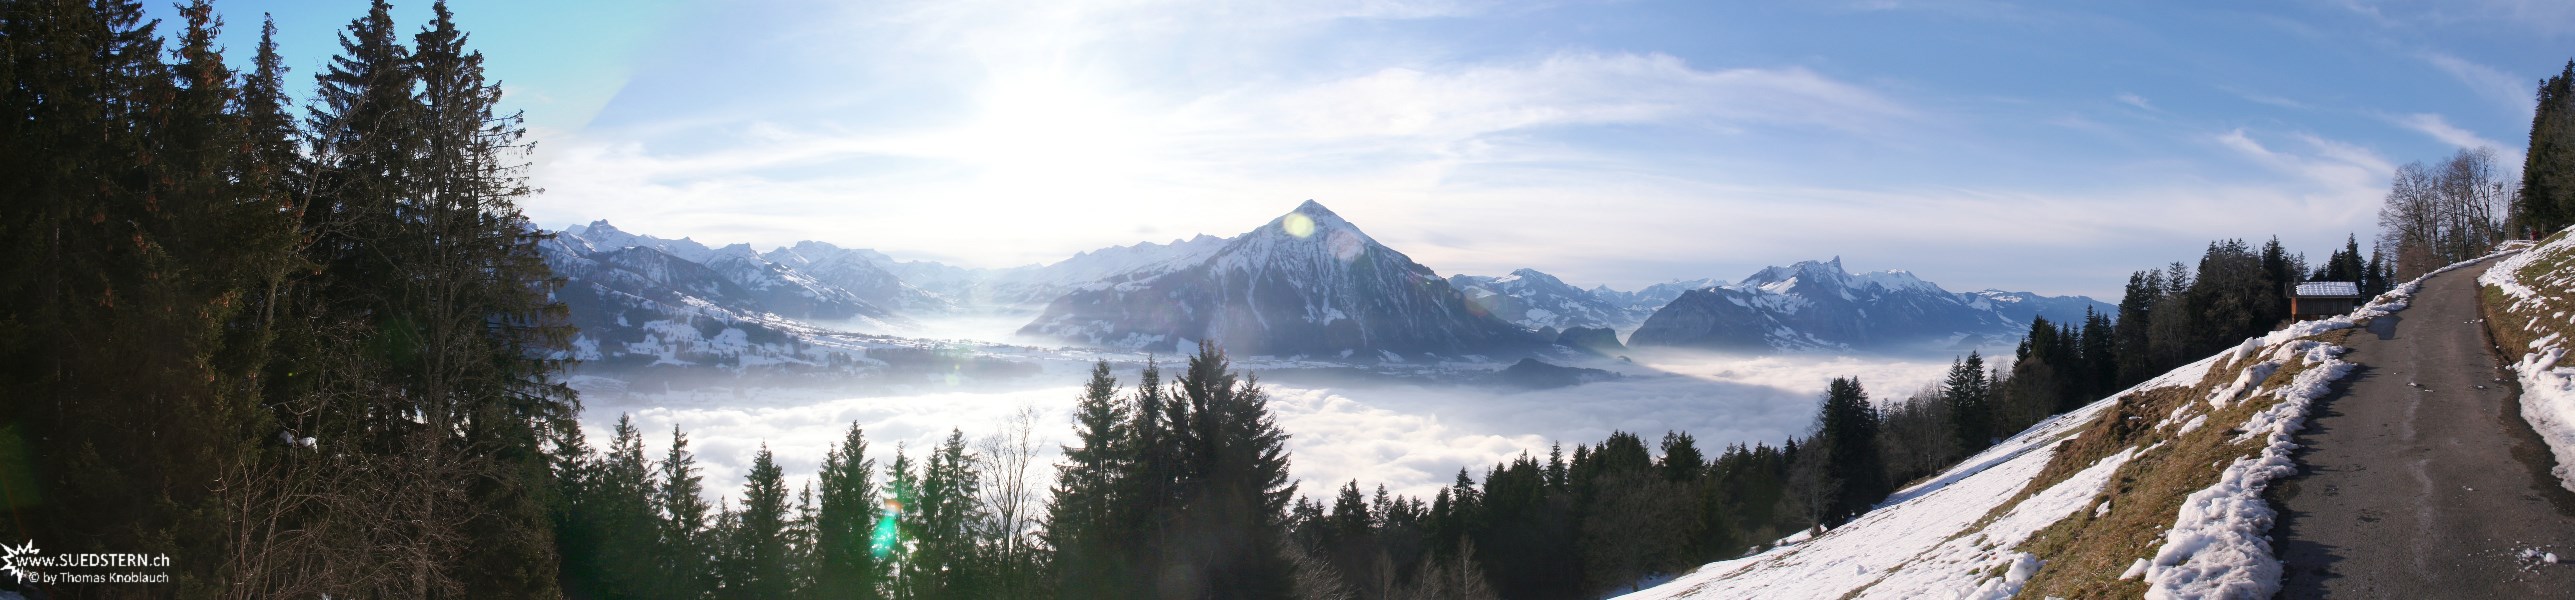 2007-12-25 - Panorama near Beatenberg, Switzerland